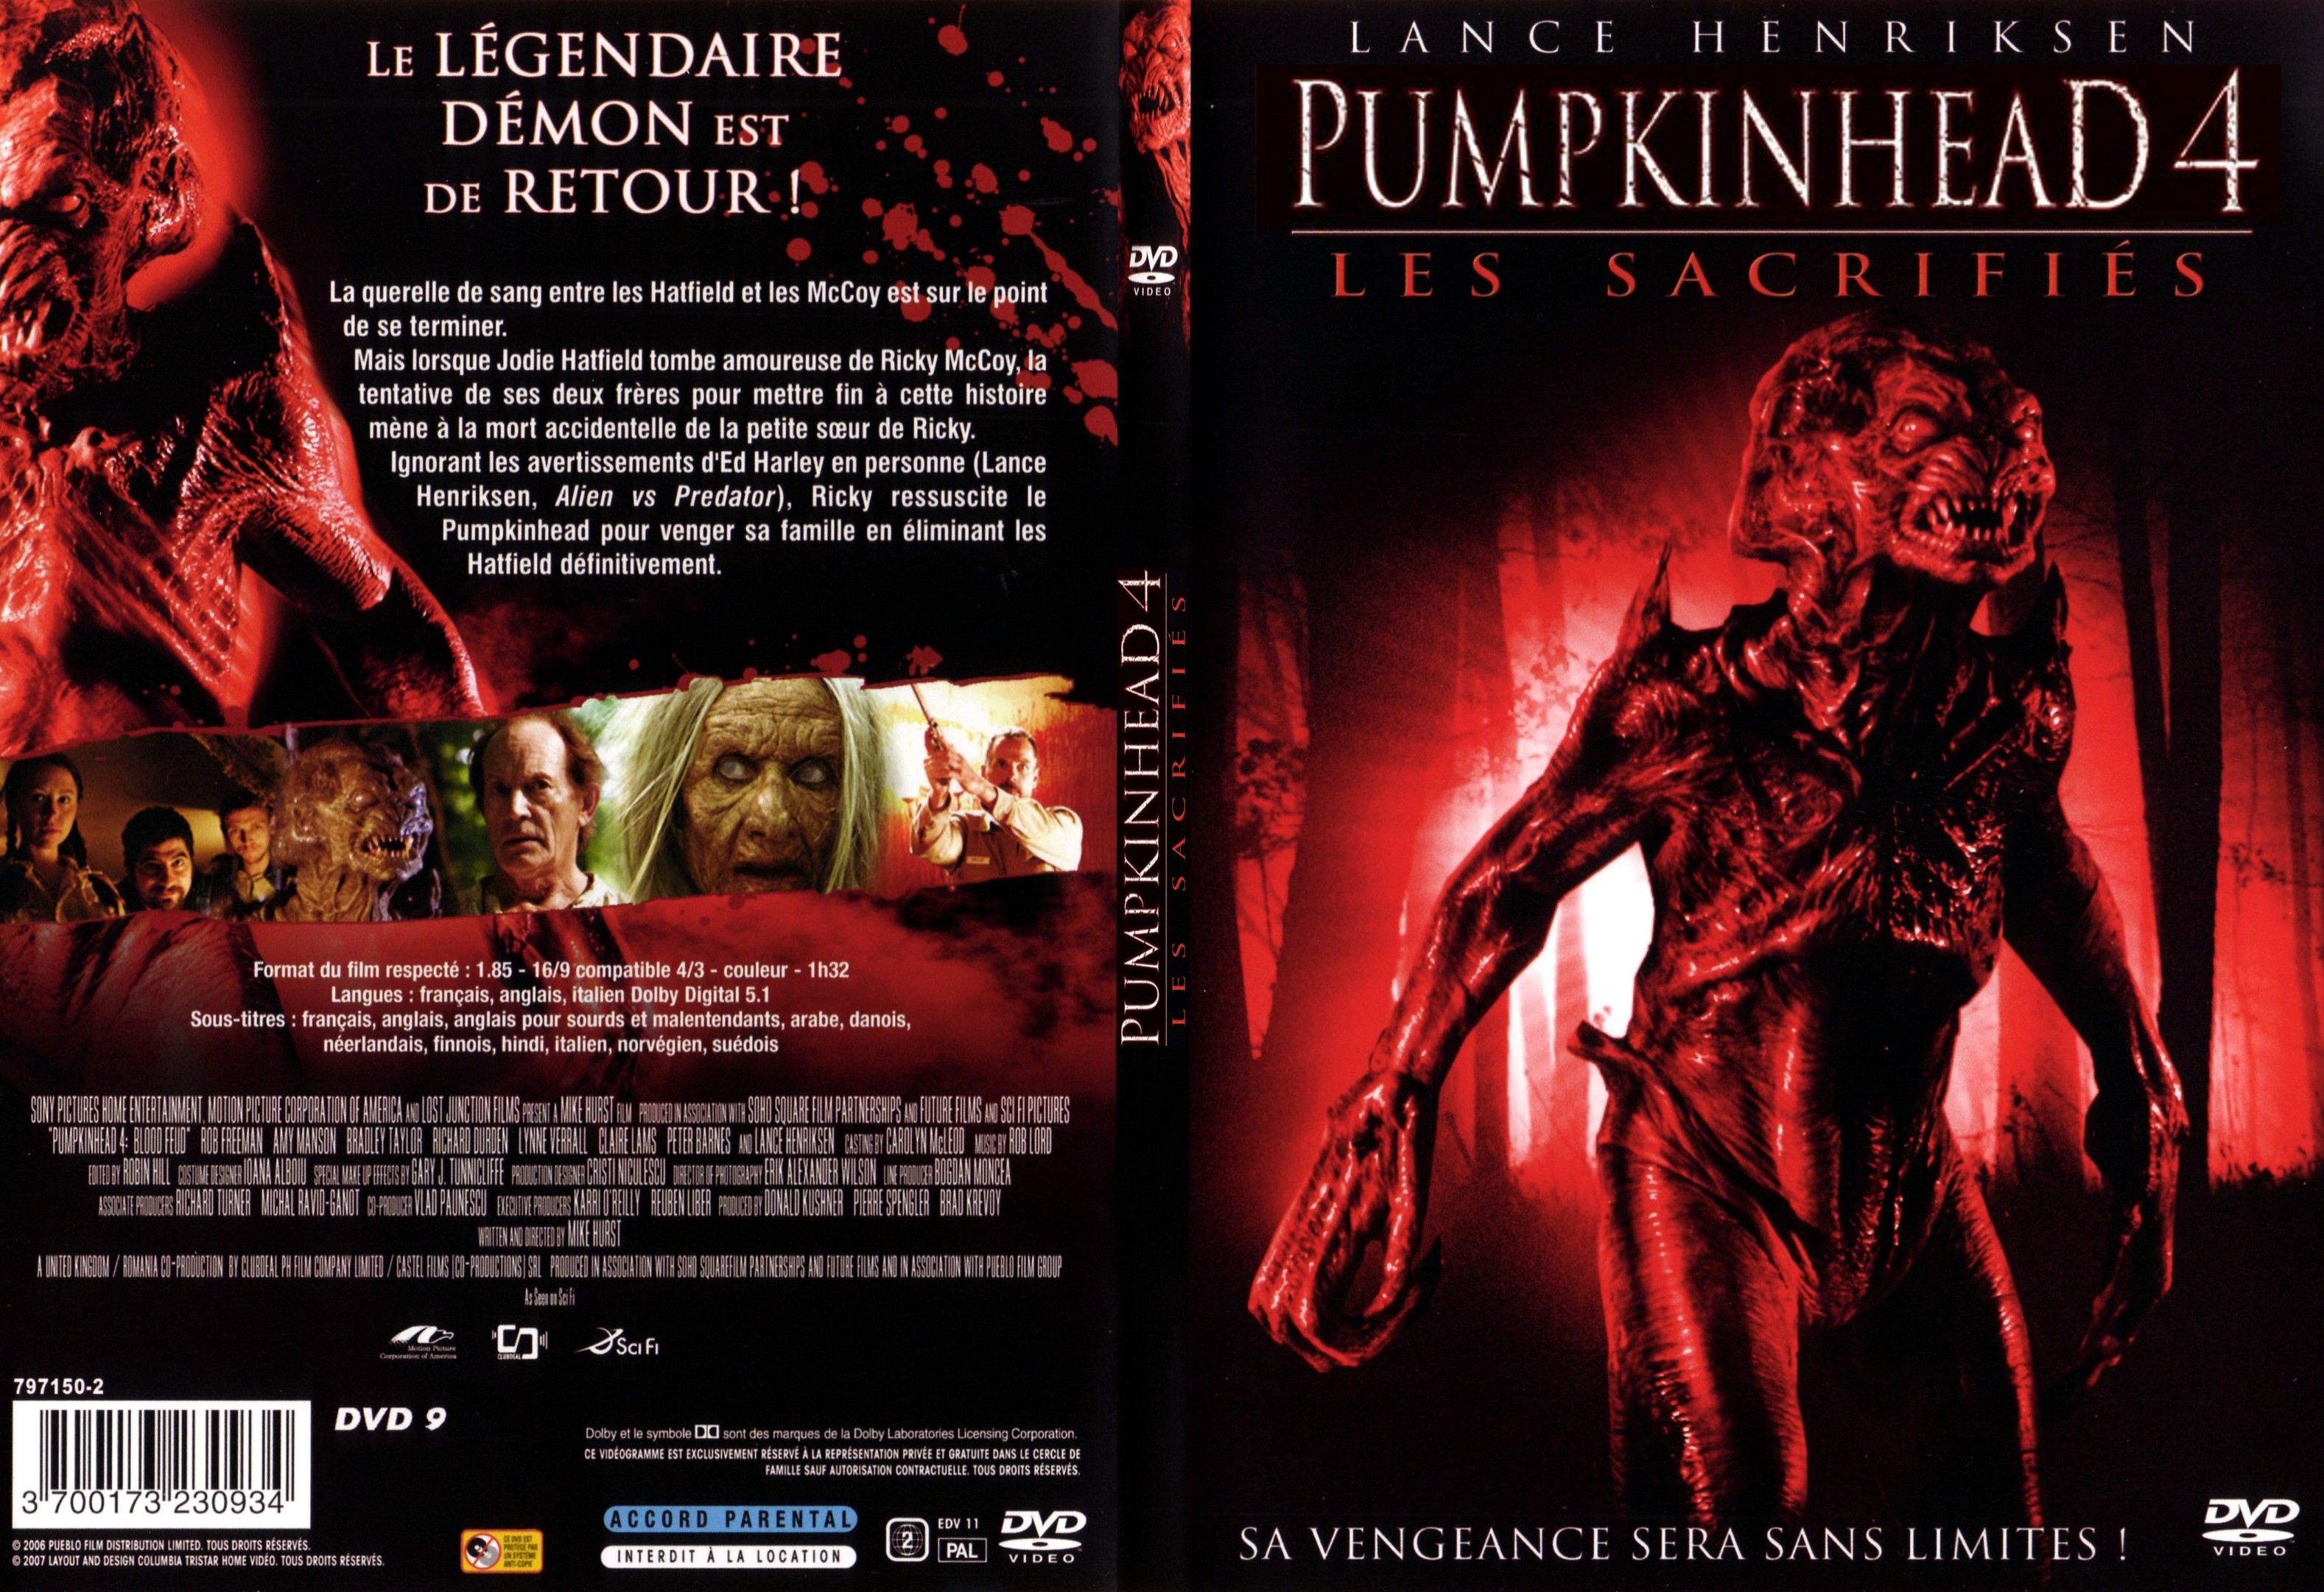 Jaquette DVD Pumpkinhead 4 les sacrifis - SLIM